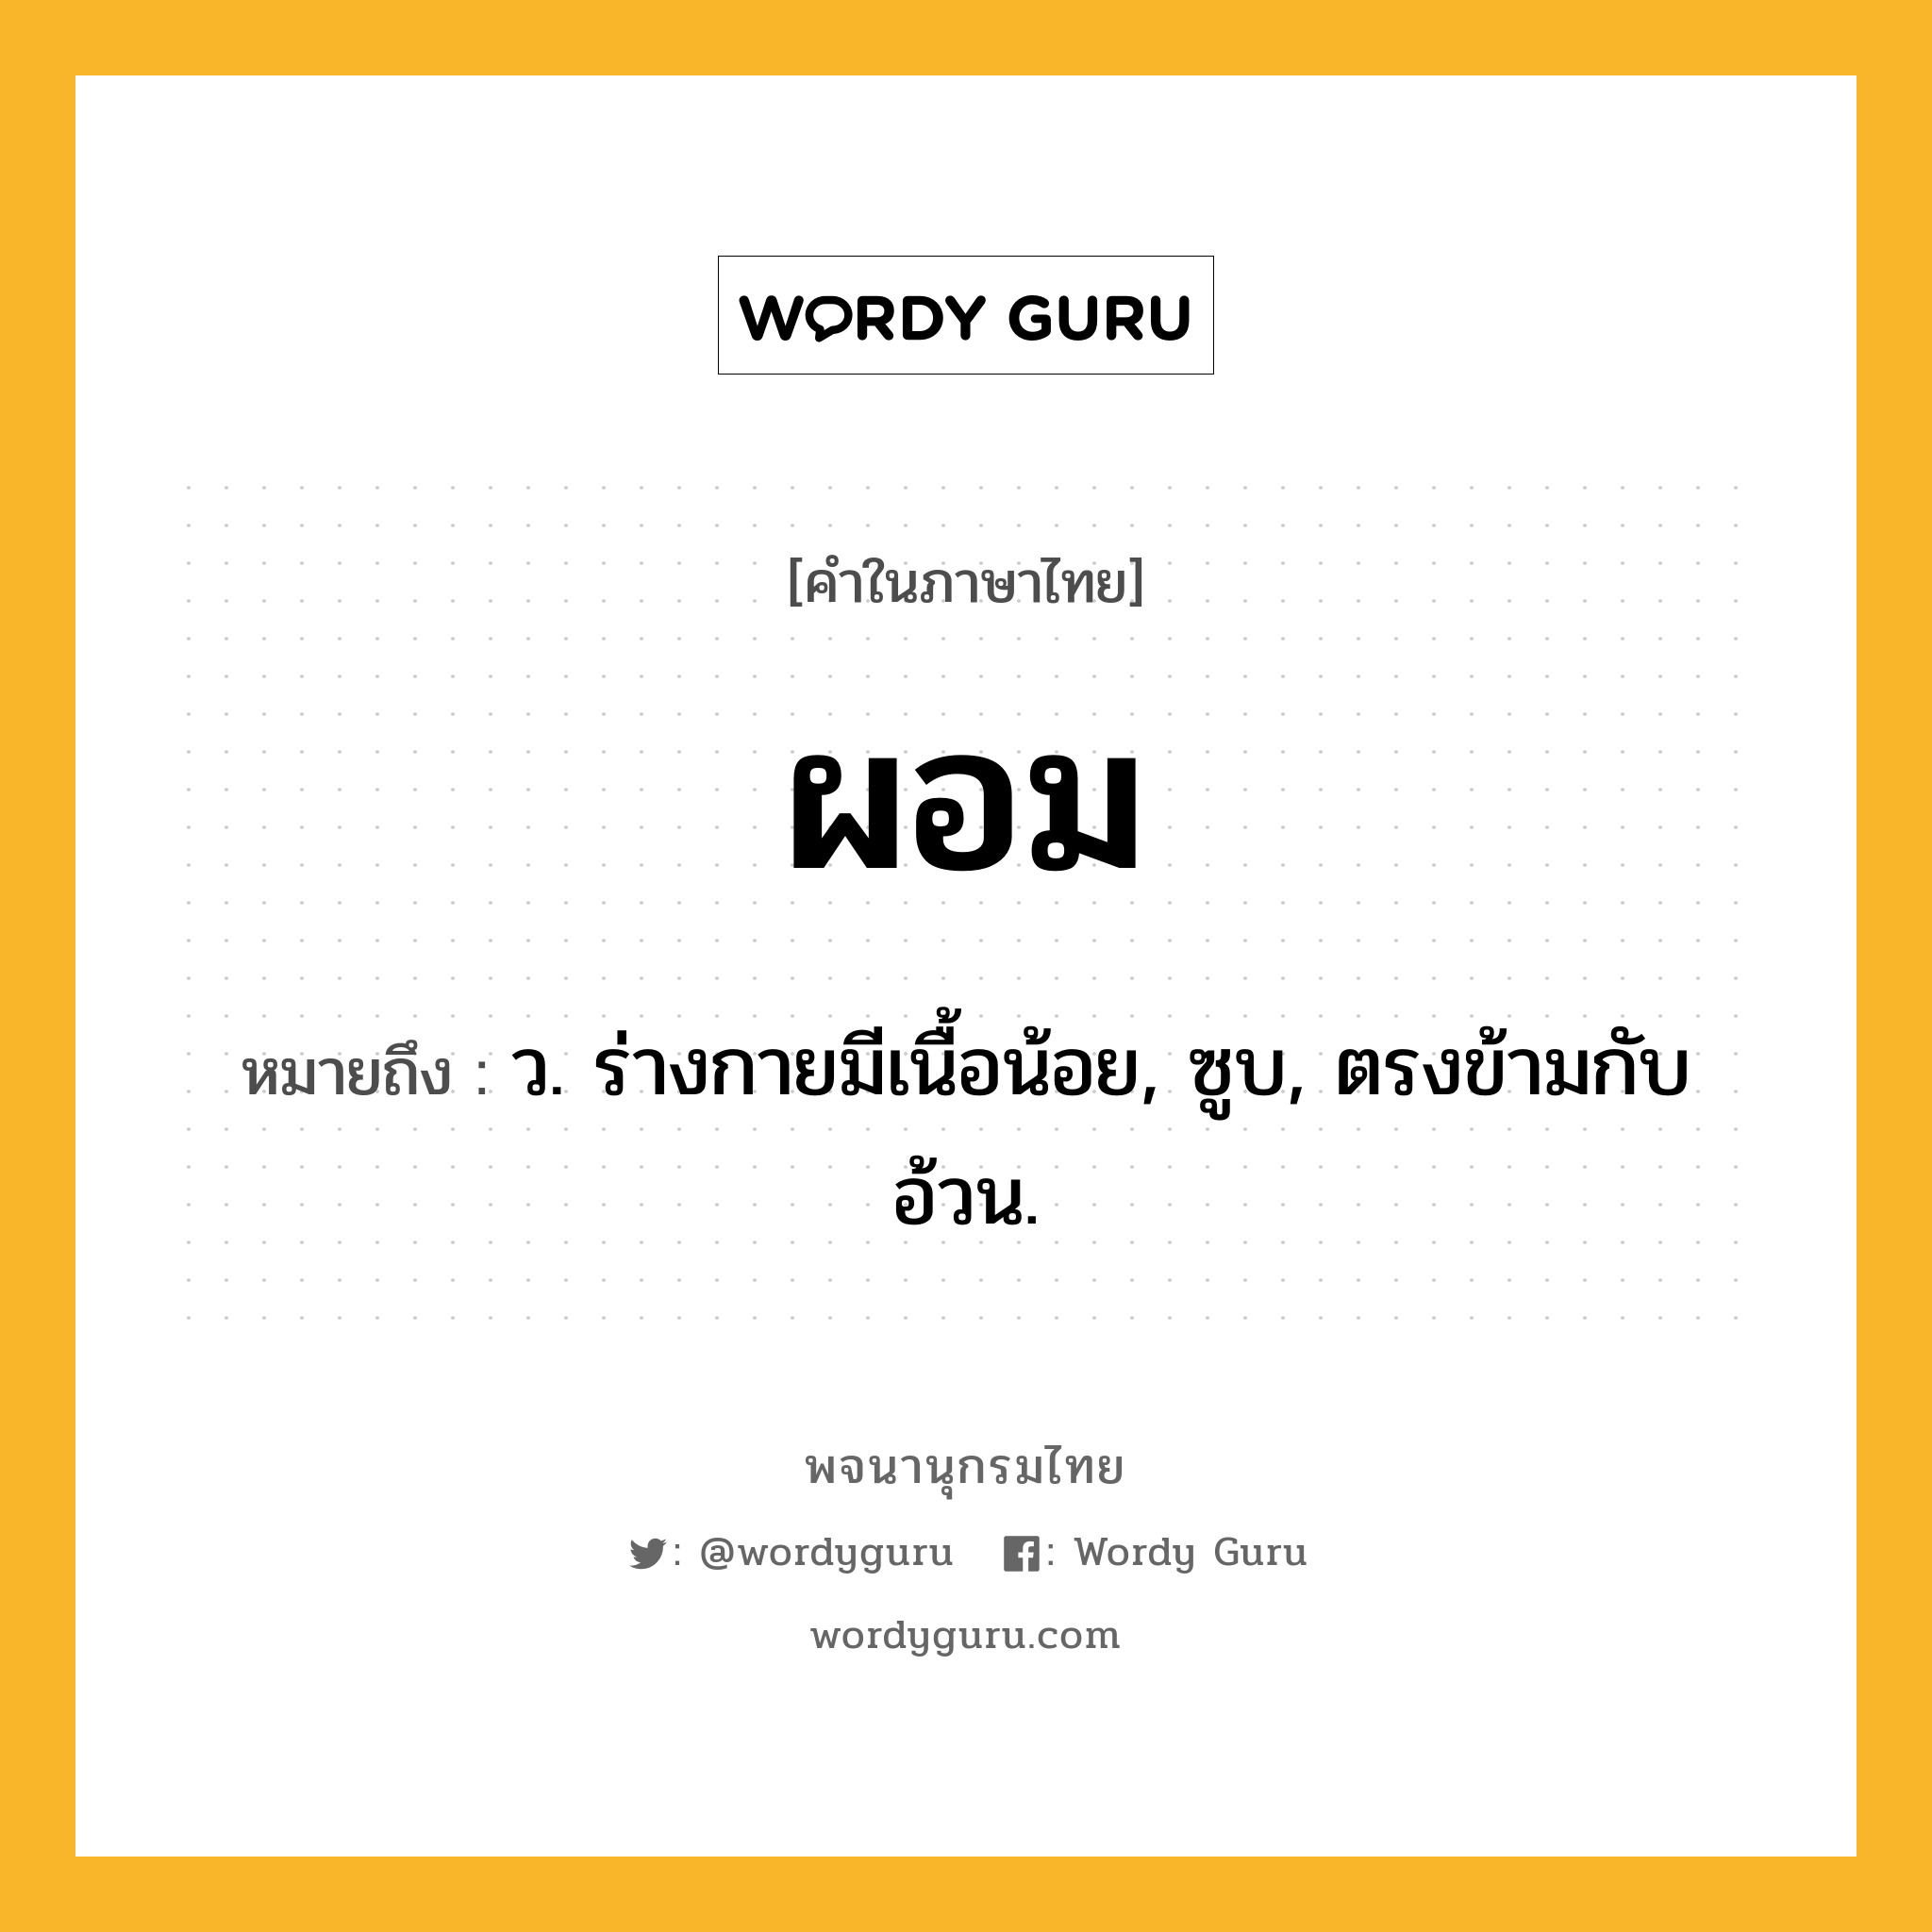 ผอม ความหมาย หมายถึงอะไร?, คำในภาษาไทย ผอม หมายถึง ว. ร่างกายมีเนื้อน้อย, ซูบ, ตรงข้ามกับ อ้วน.